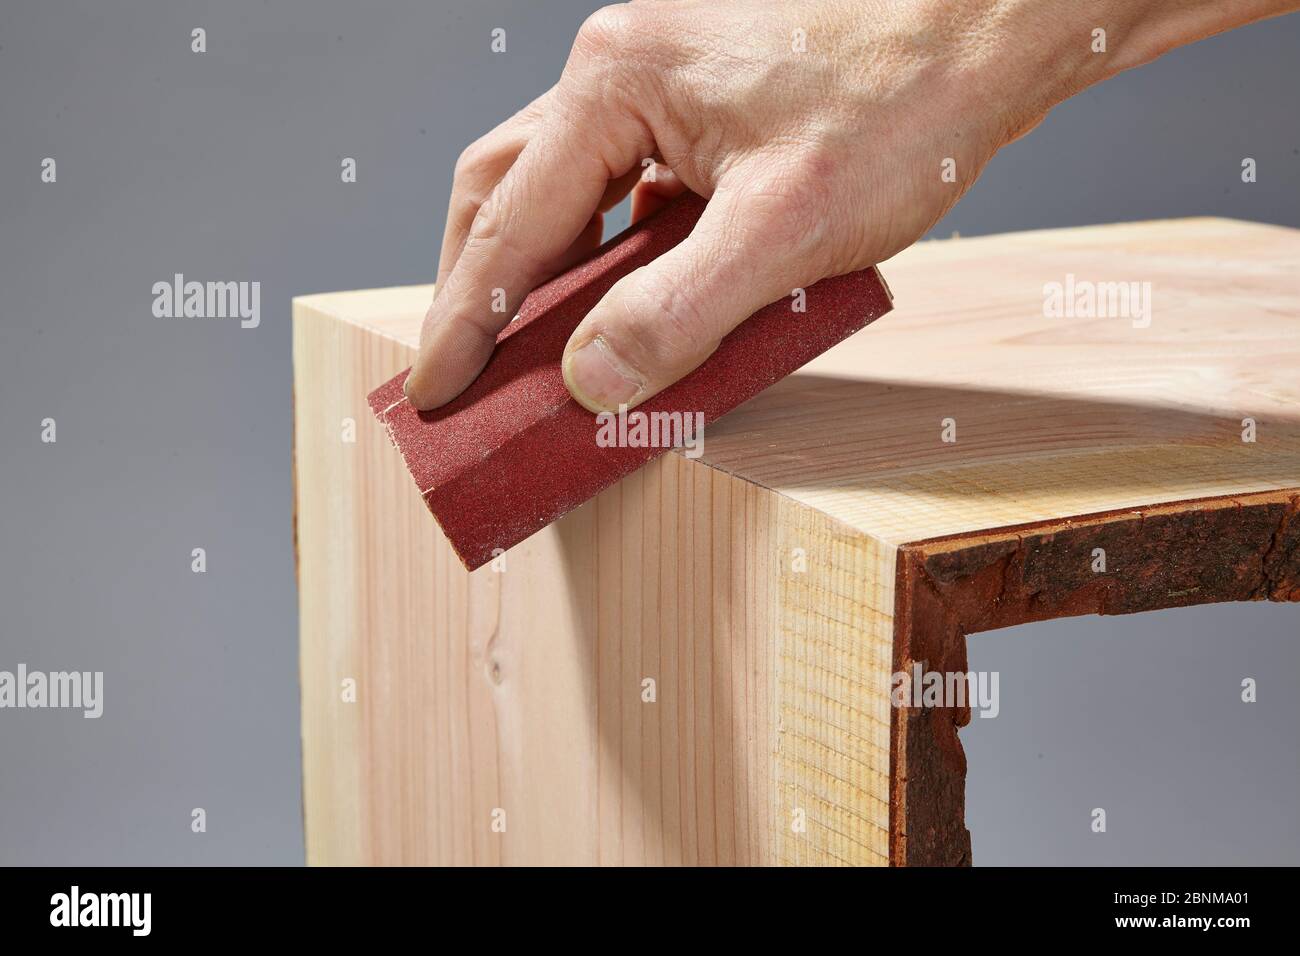 Holzregal bauen, Selbstfertigung, Schritt für Schritt, Schritt 9 die Außenkante schleifen, nachdem der Kleber mit Hilfe eines Schleifblocks gehärtet ist Stockfoto